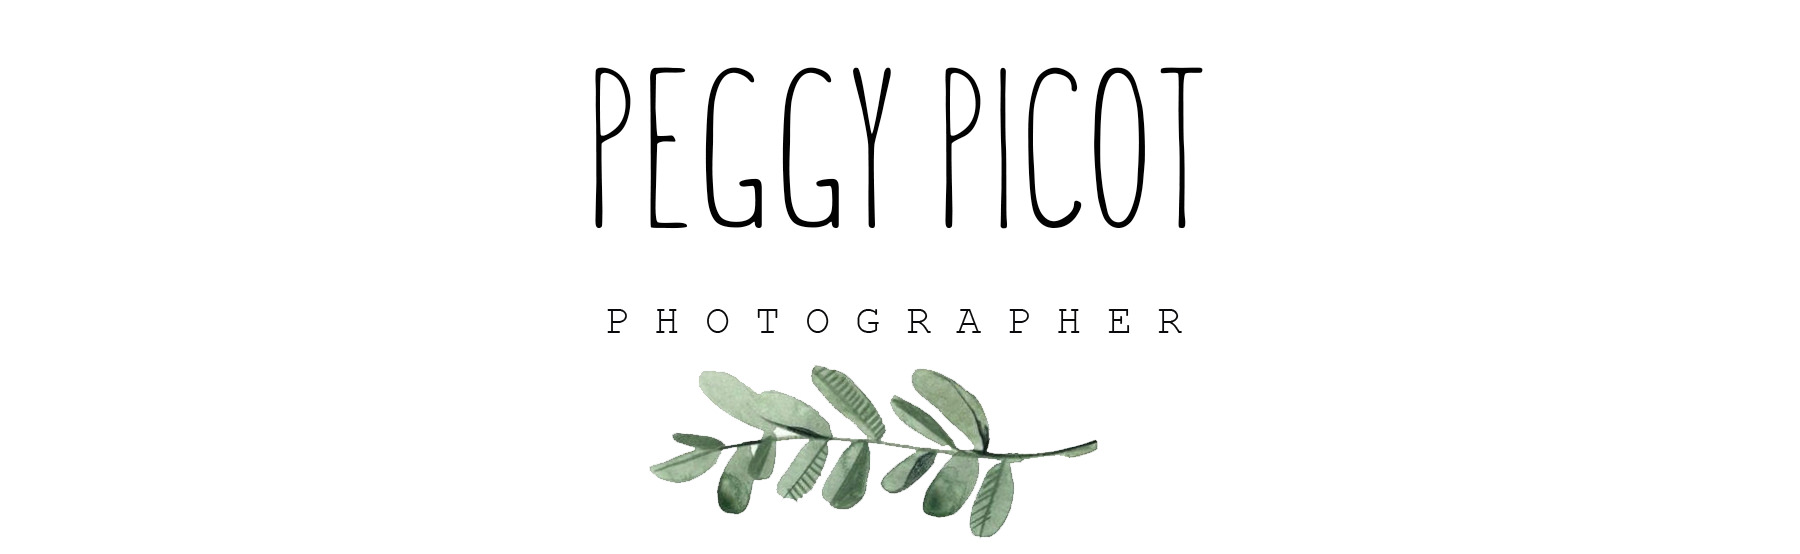 Peggy Picot photographe - cuisine végétale